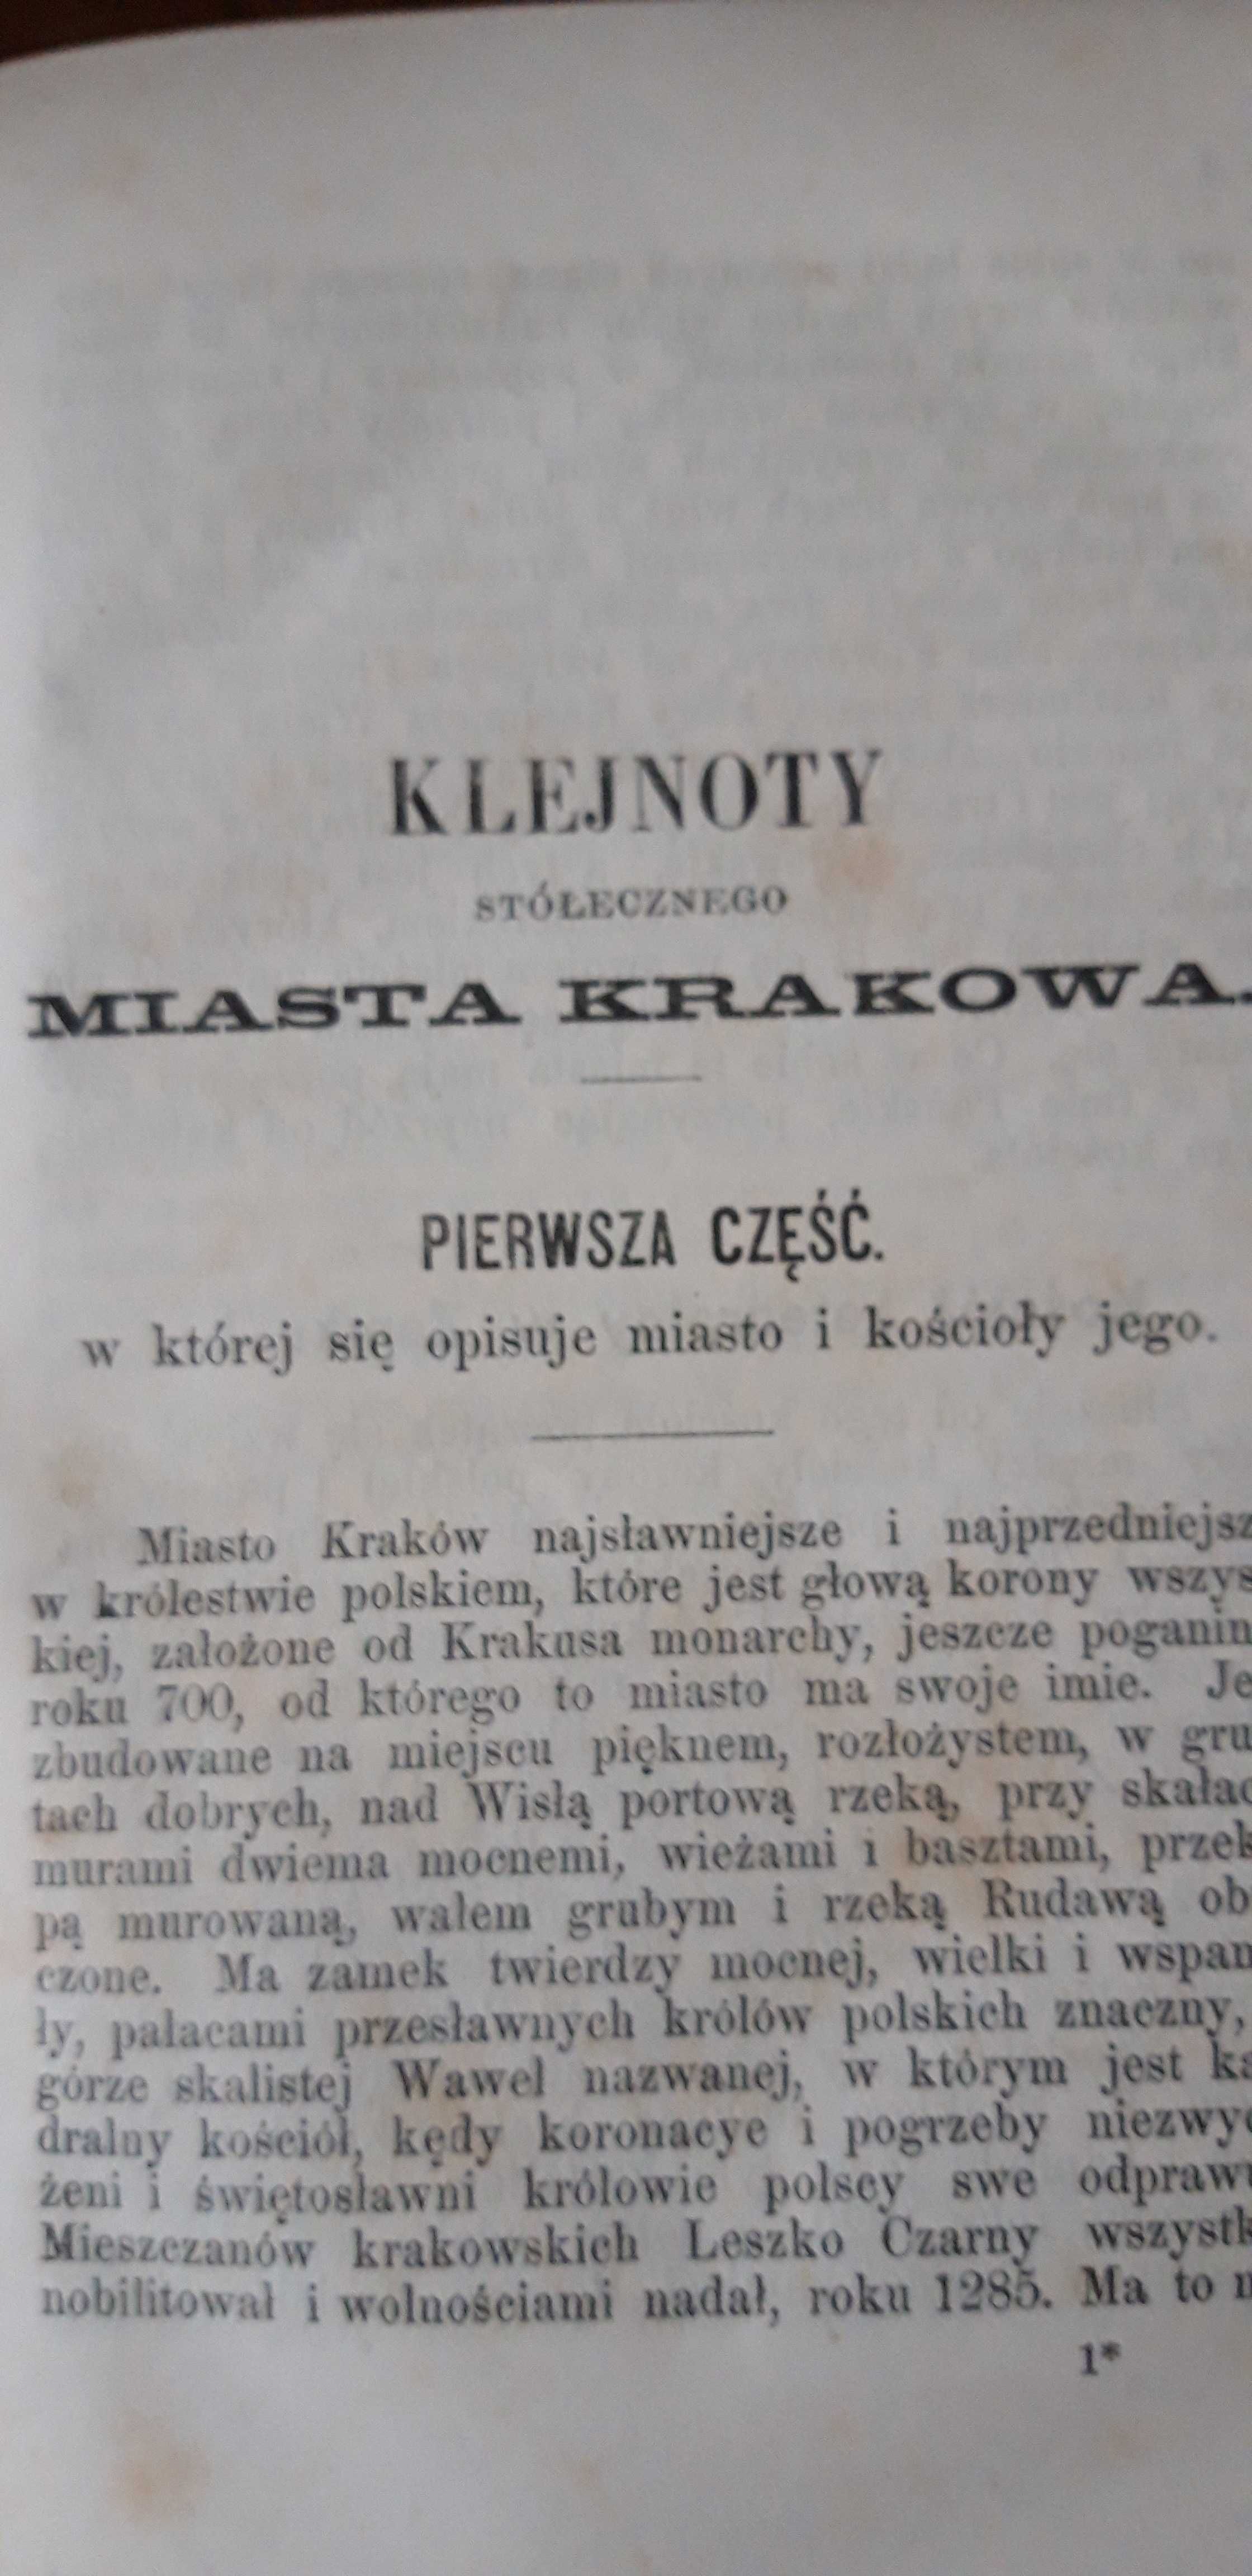 Klejnoty-KOŚCIOŁY Krakowa - P. Pruszcz- Kraków 1861, opr., rzadkie